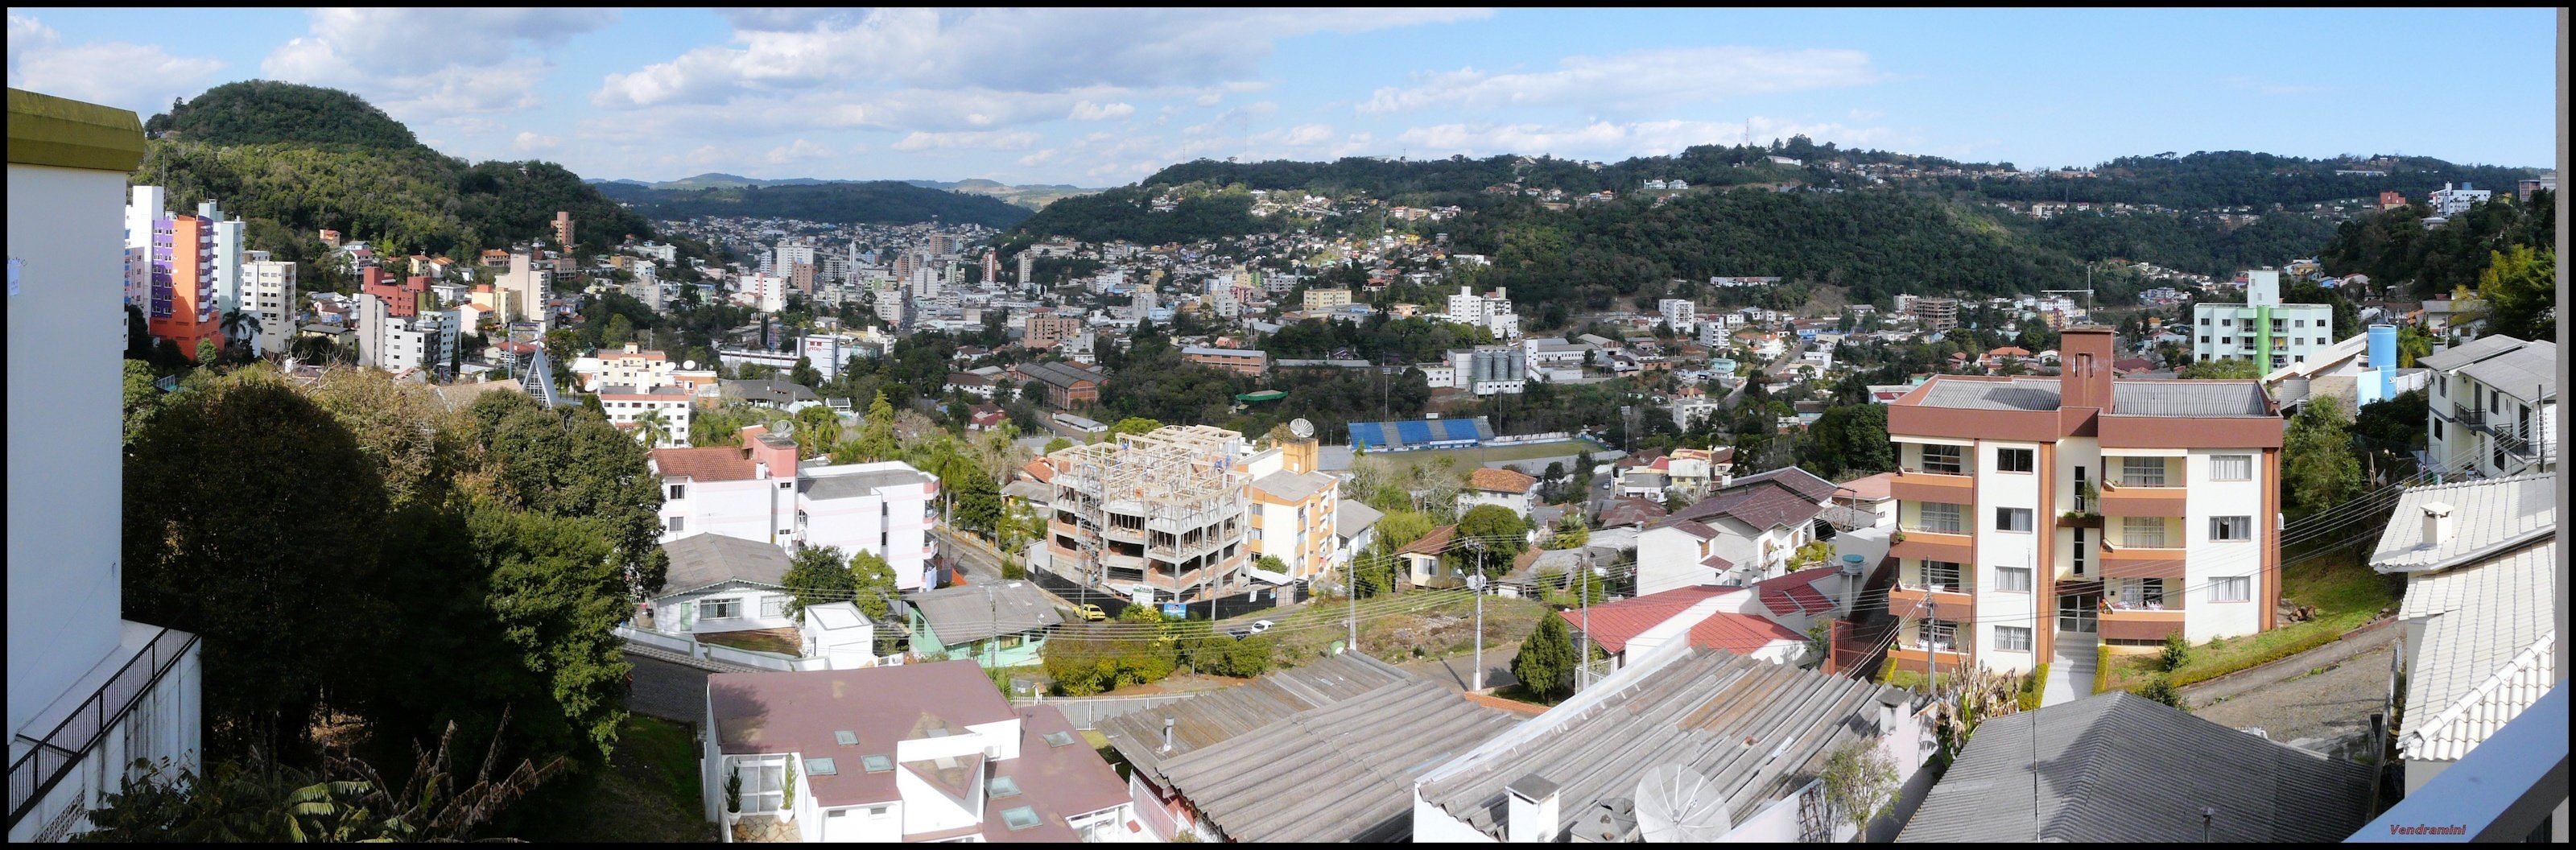 As melhores cidades pequenas do Brasil para viver (5)